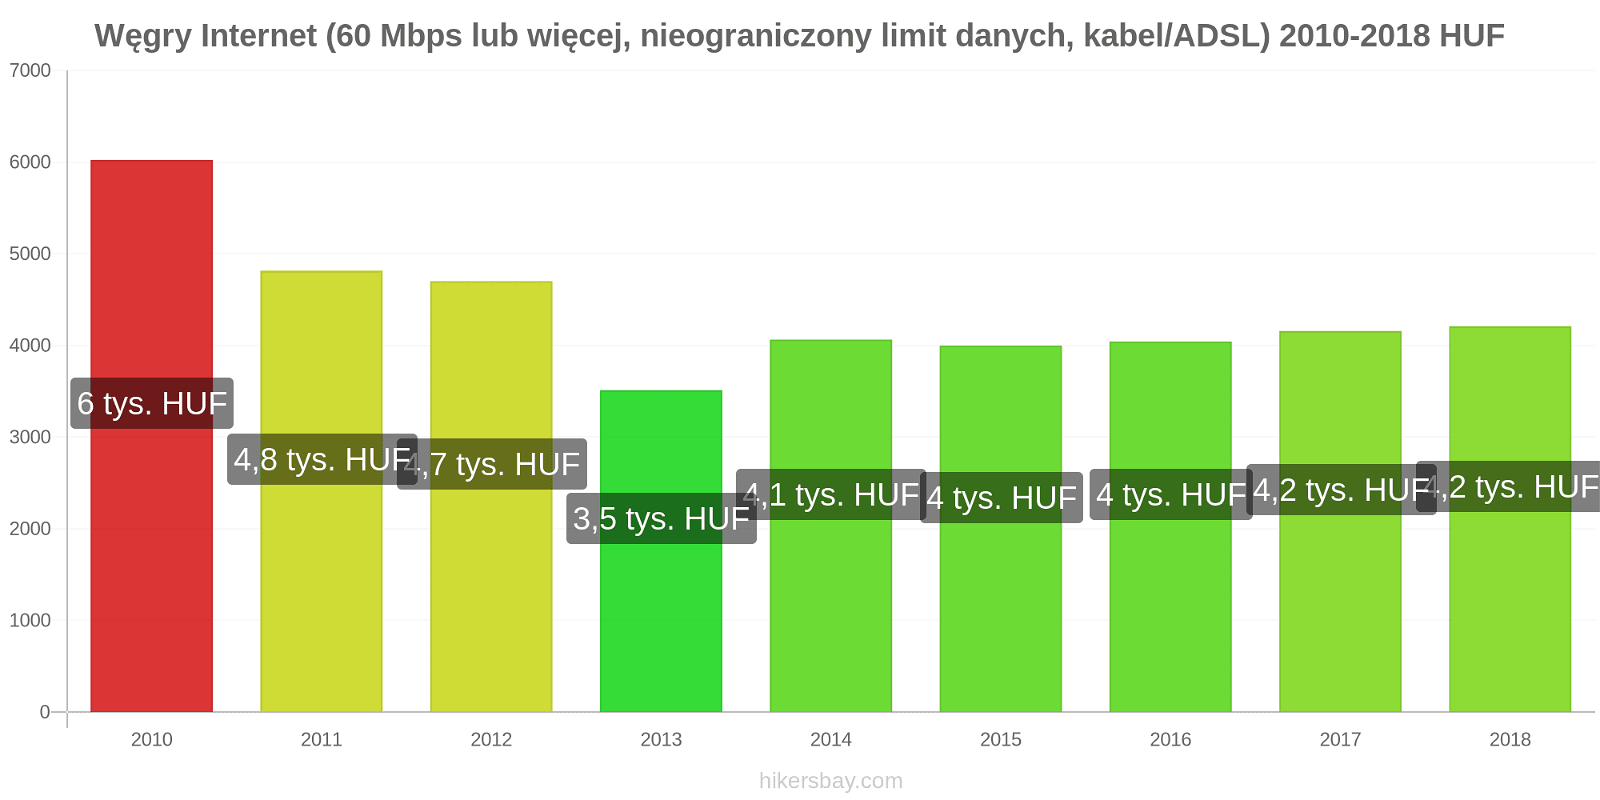 Węgry zmiany cen Internet (60 Mbps lub więcej, nieograniczony limit danych, kabel/ADSL) hikersbay.com